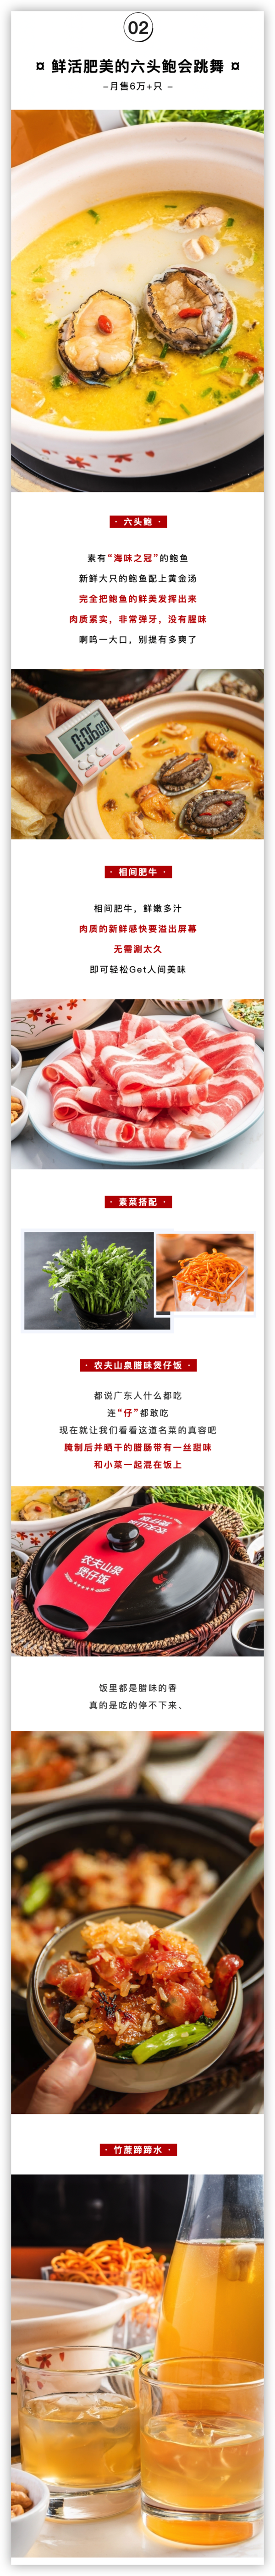 上海环球港+世博源店 如一鸡鲍鱼·粤式煲汤 3-4人餐